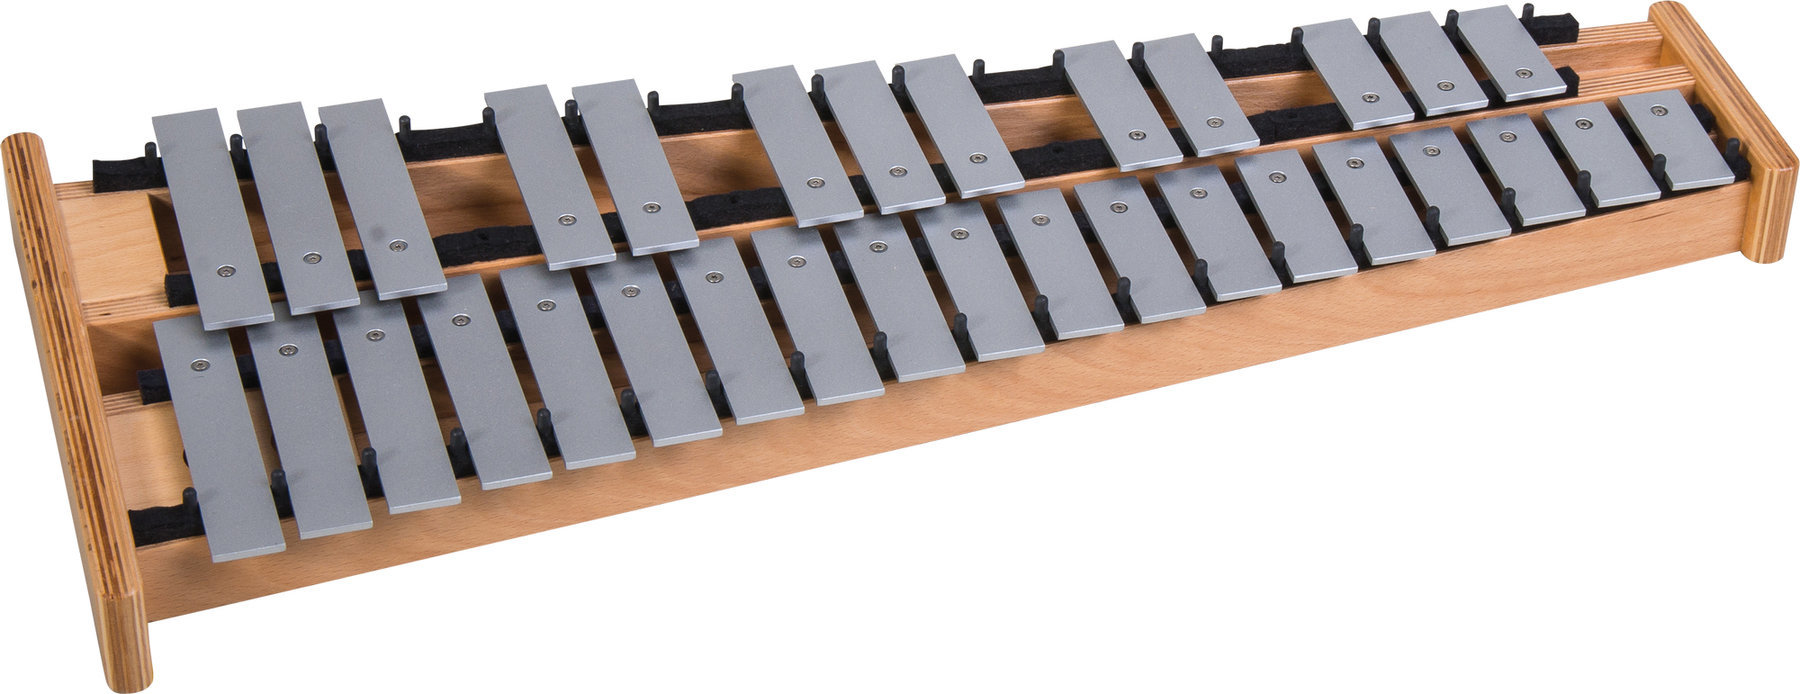 Xylophon / Metallophon / Glockenspiel Studio 49 SP-G 2500 Semi Professional Glockenspiel